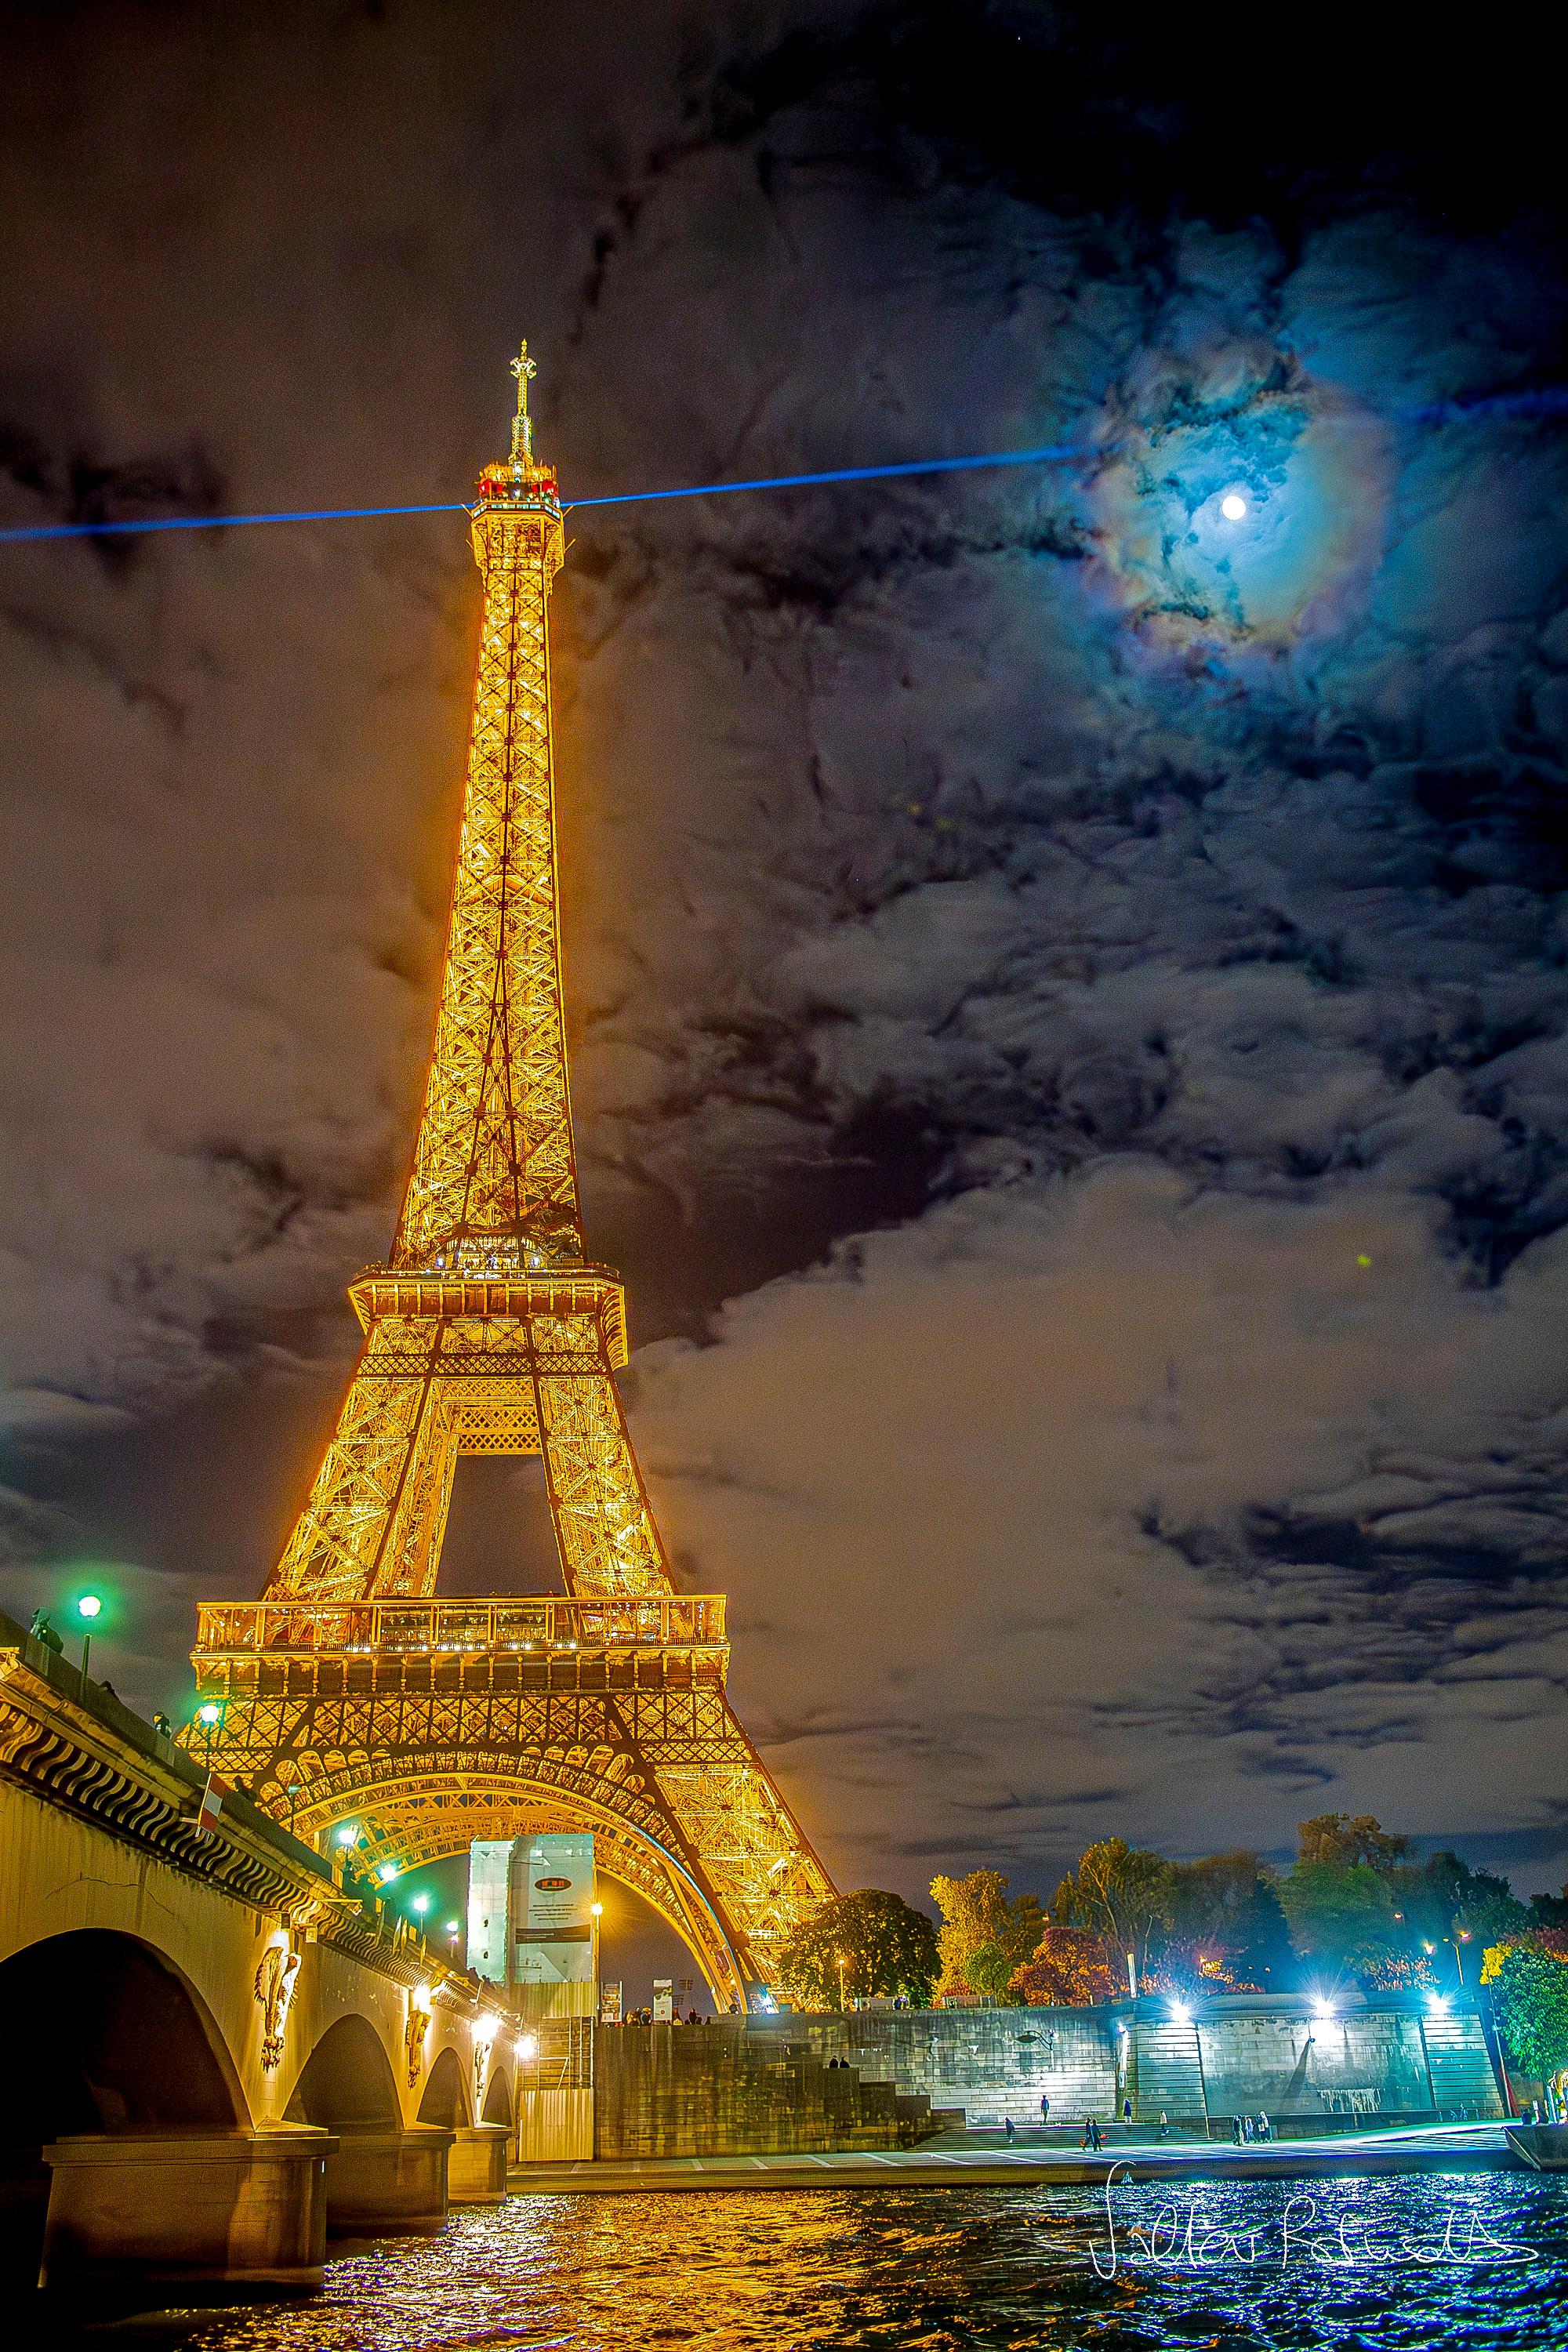 يظهر برج إيفِل الشهير في پاريس، فرنسا، يساراً مُناراً بالذهبيّ ليلاً. يُشعُّ ضوء ليزر أزرق للخارج من قمّته. تُرقِّط السُّحُب سماء الخلفيّة، ويكون القمر مرئيّاً أيضاً عبرها، لكنَّه مُحاطٌ بحلقاتٍ زاهية بالألوان: إكليلٌ قمريّ.